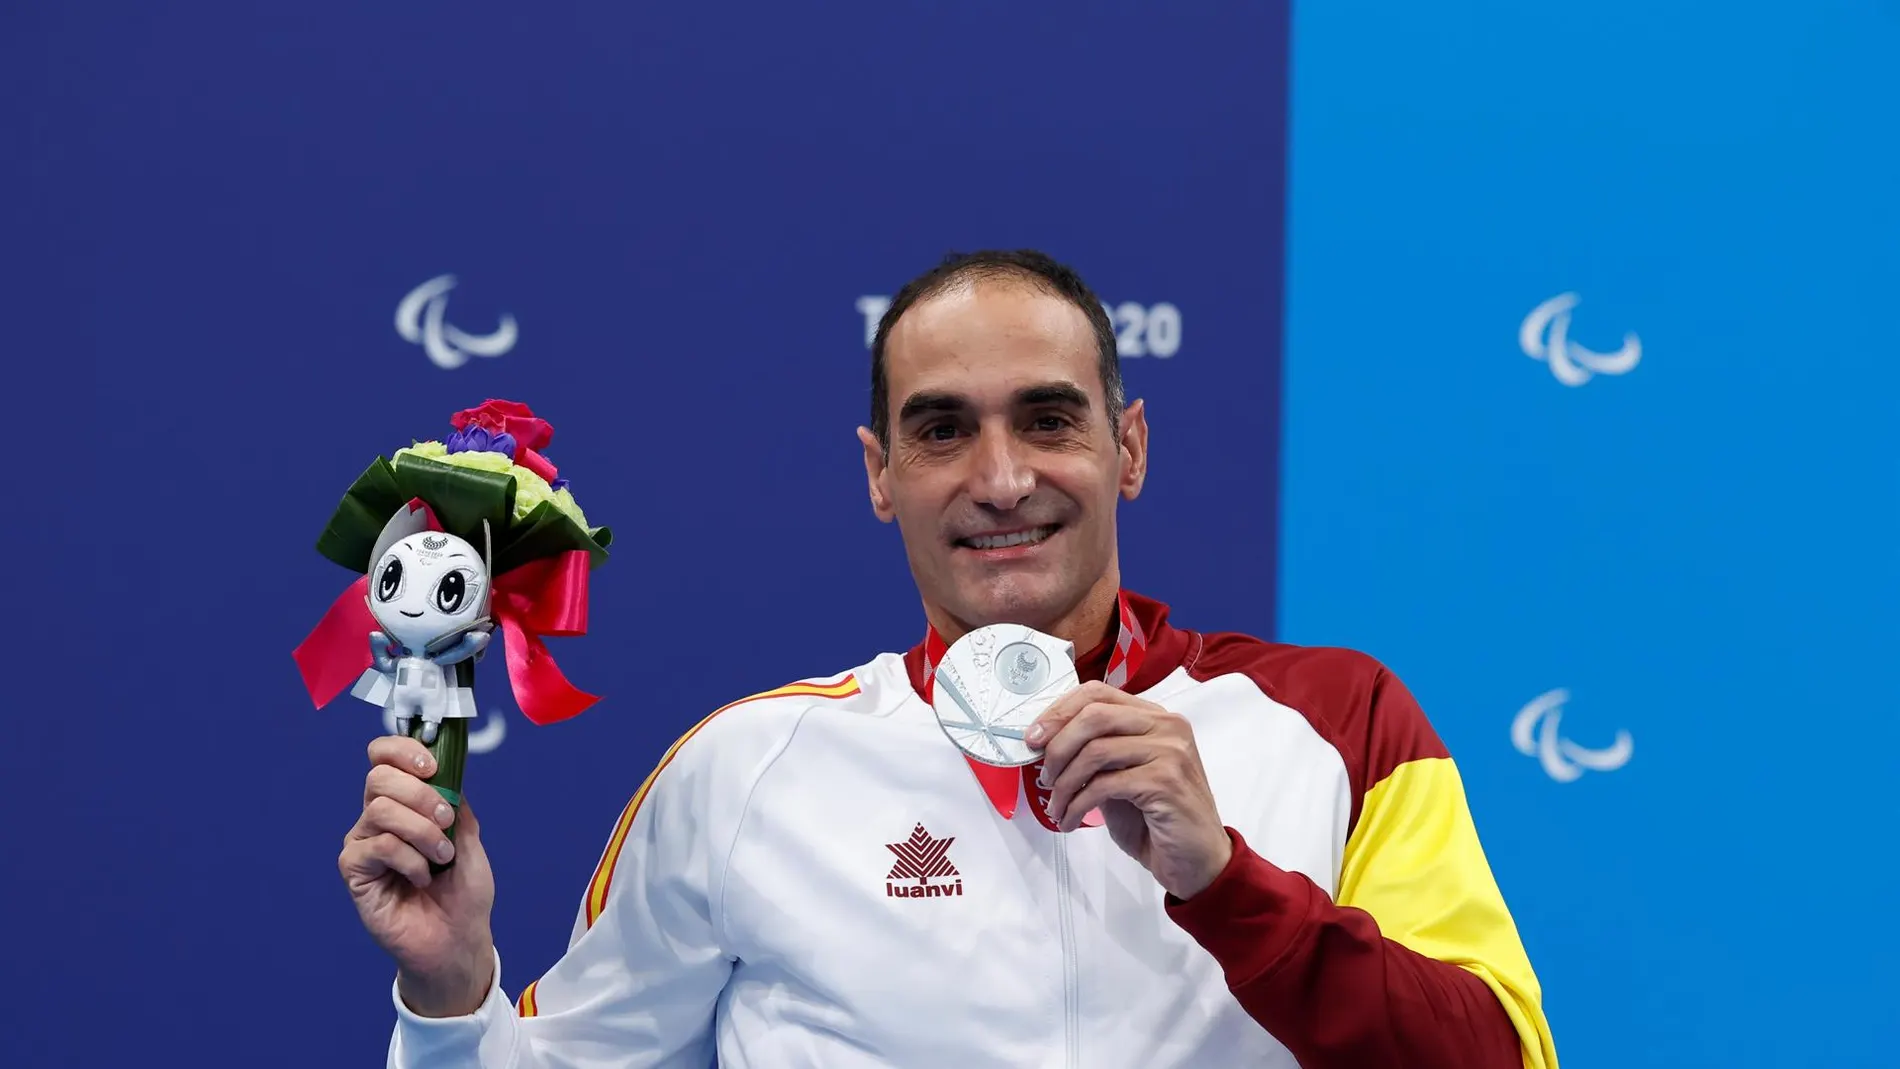 El nadador barcelonés Miguel Luque ha logrado la primera medalla para la delegación española en los Juegos Paralímpicos de Tokio (Japón) al colgarse la plata en la prueba de los 50 metros braza, clase SB3 de discapacitados físicos. 